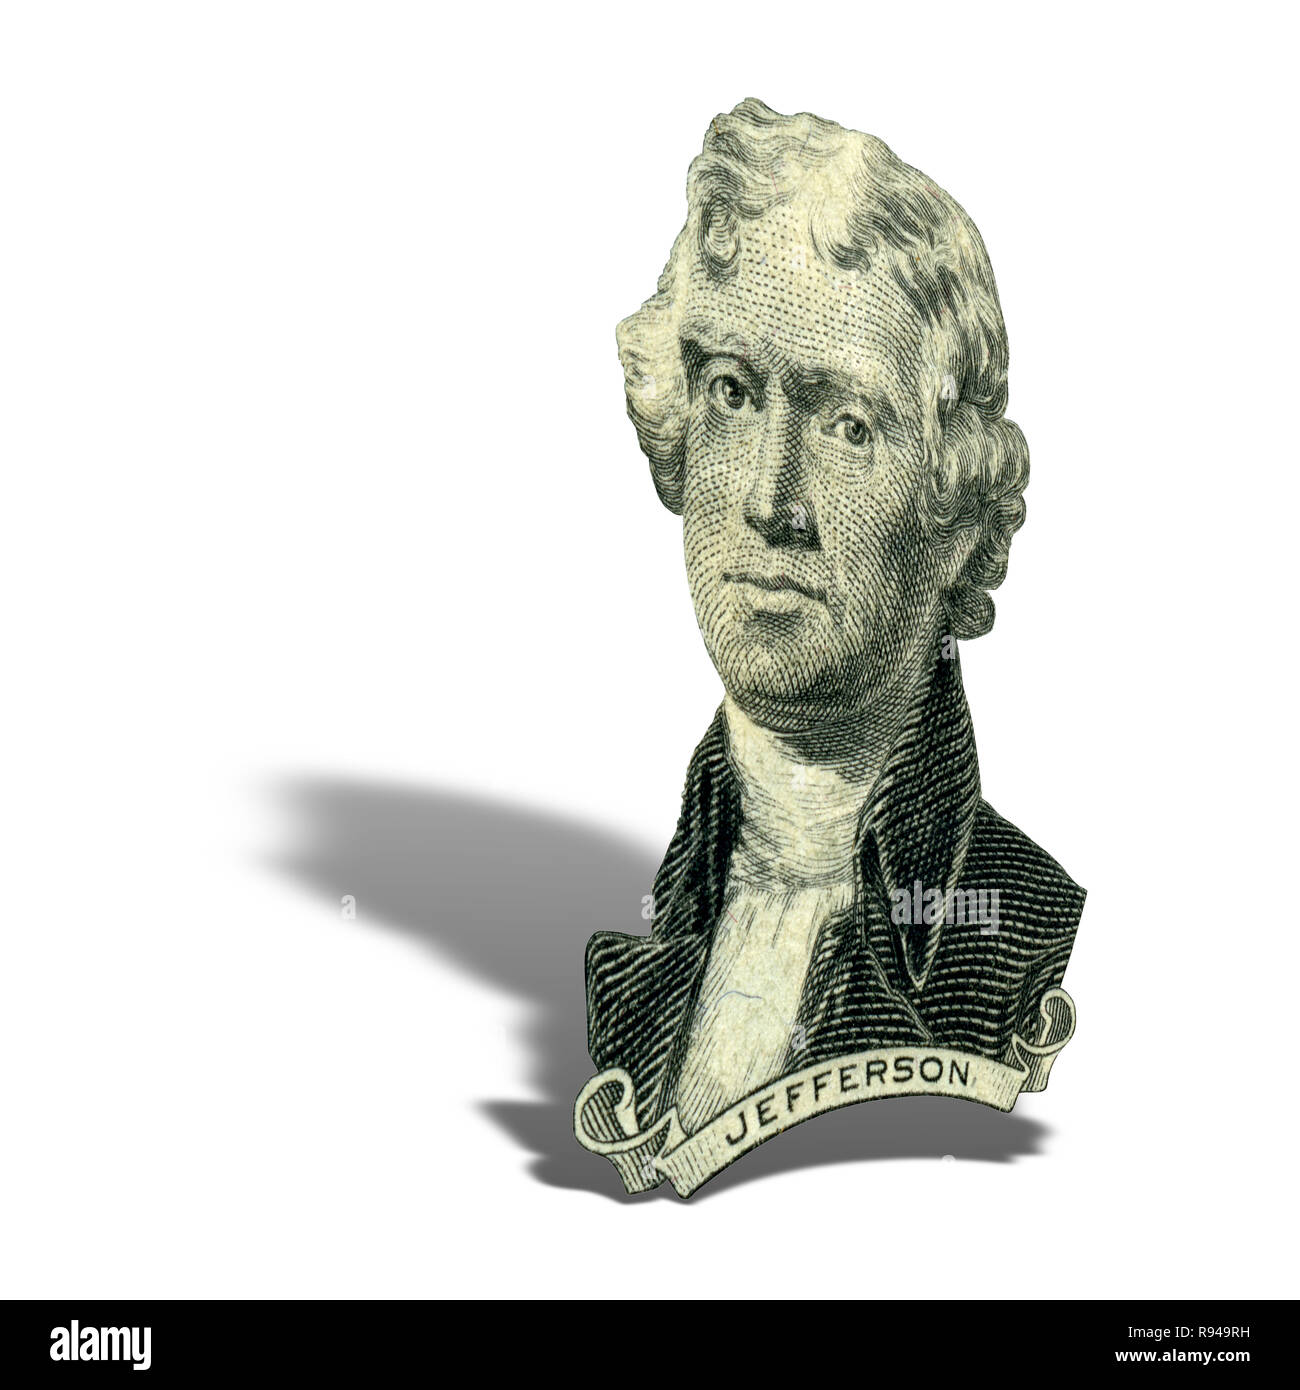 Portrait de l'ancien président américain Thomas Jefferson comme il a l'air sur deux dollar bill avers. Photo à un angle de 15 degrés, avec une ombre. Banque D'Images